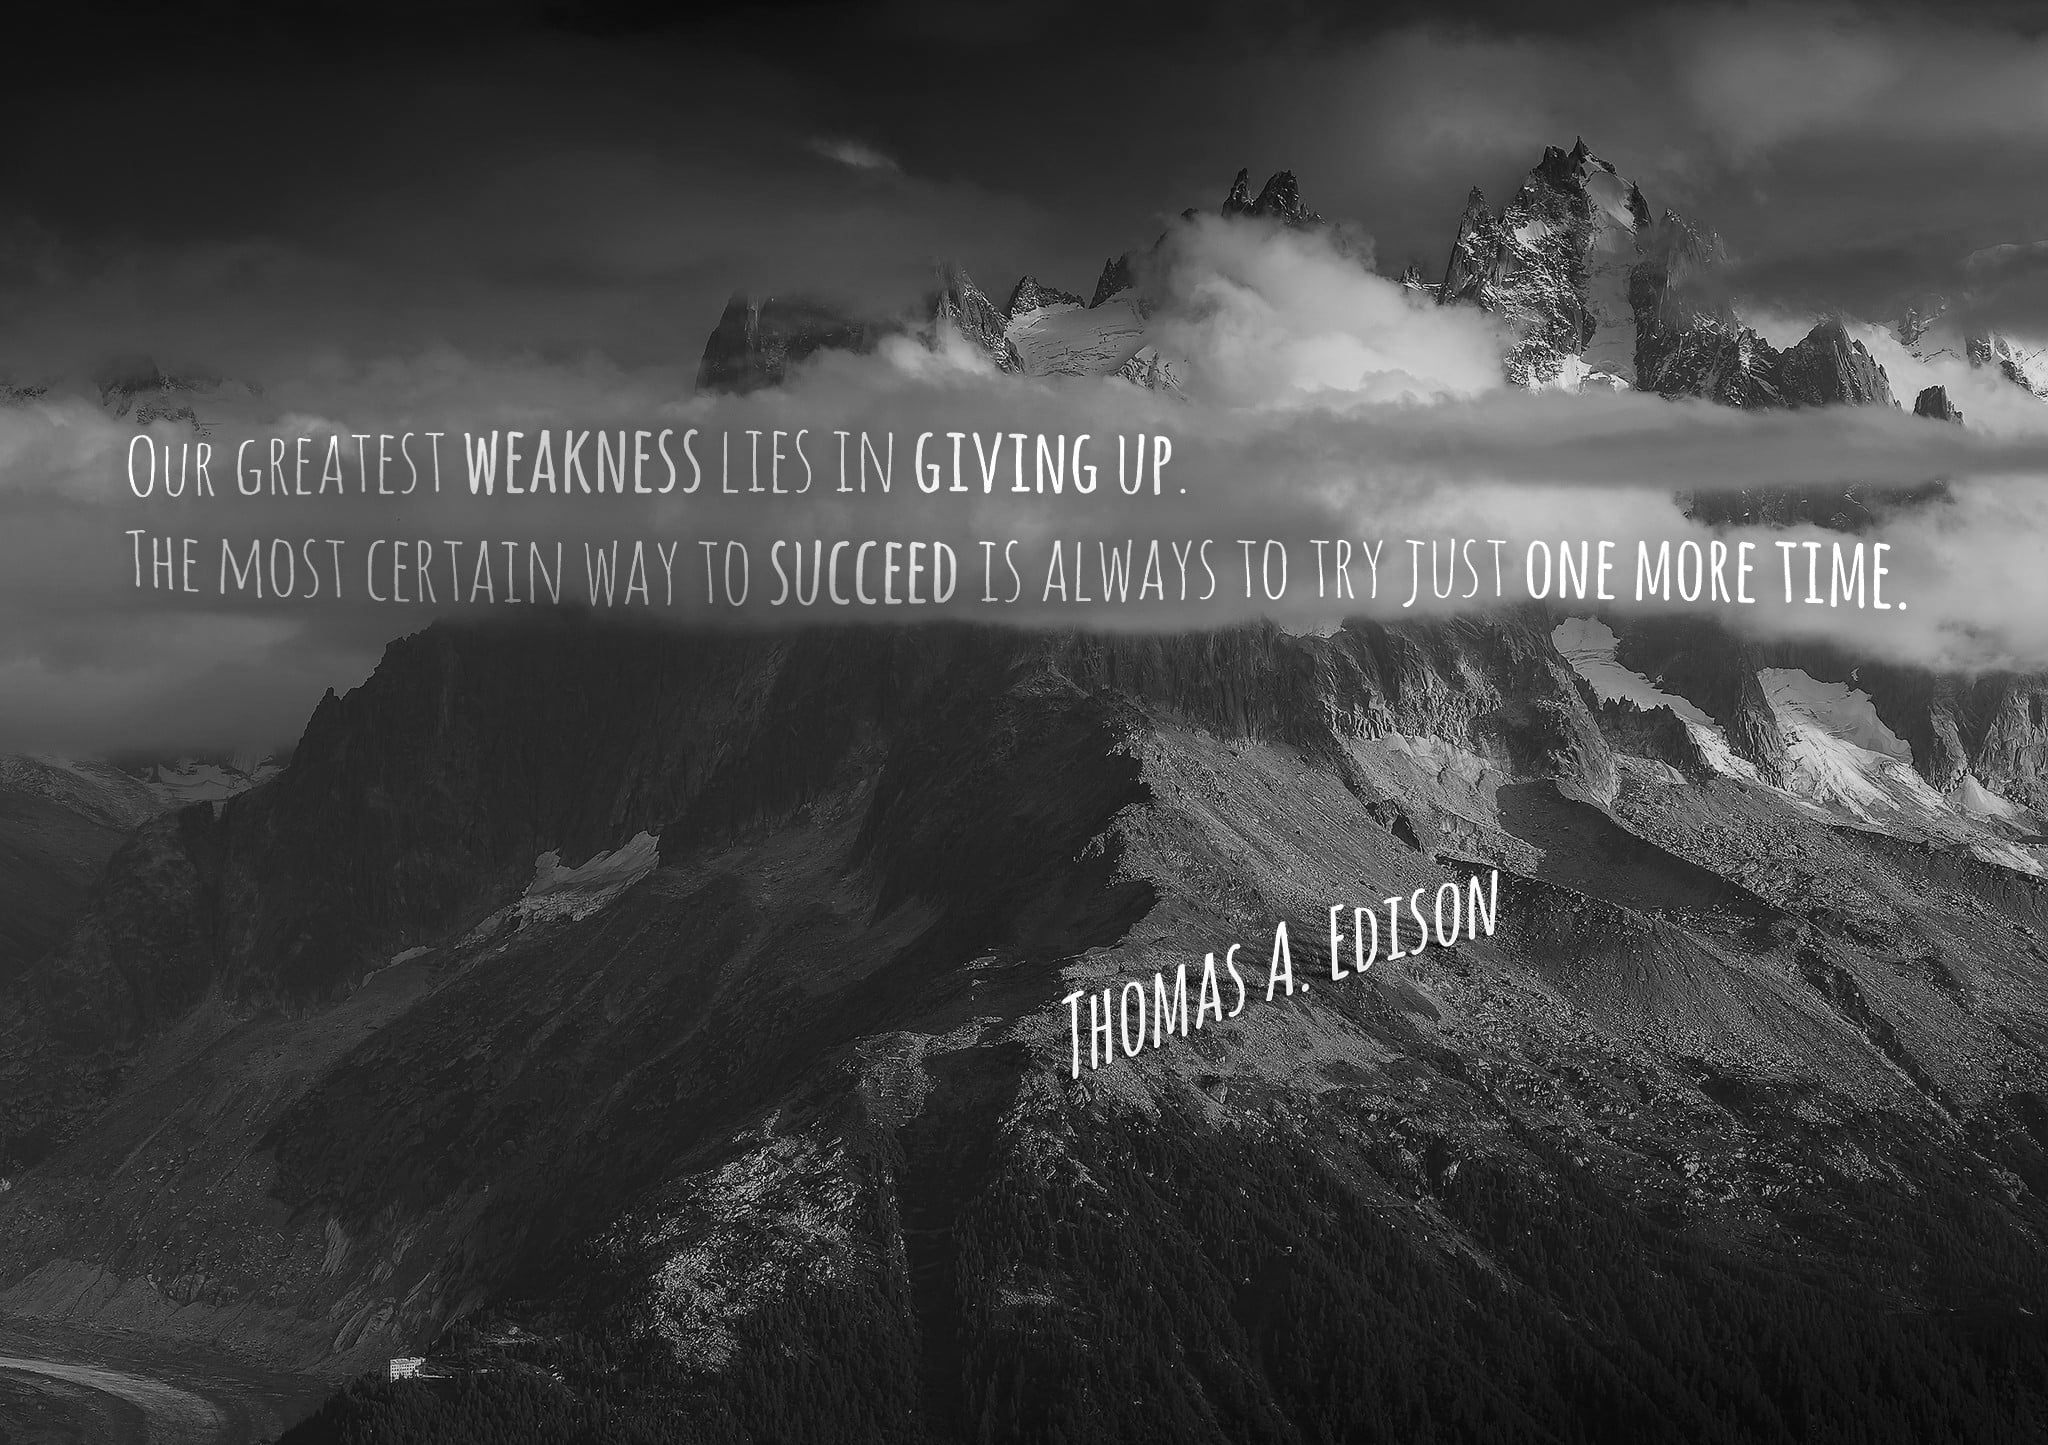 Thomas A. Edison text, wisdom, Thomas Alva Edison, quote, mountains